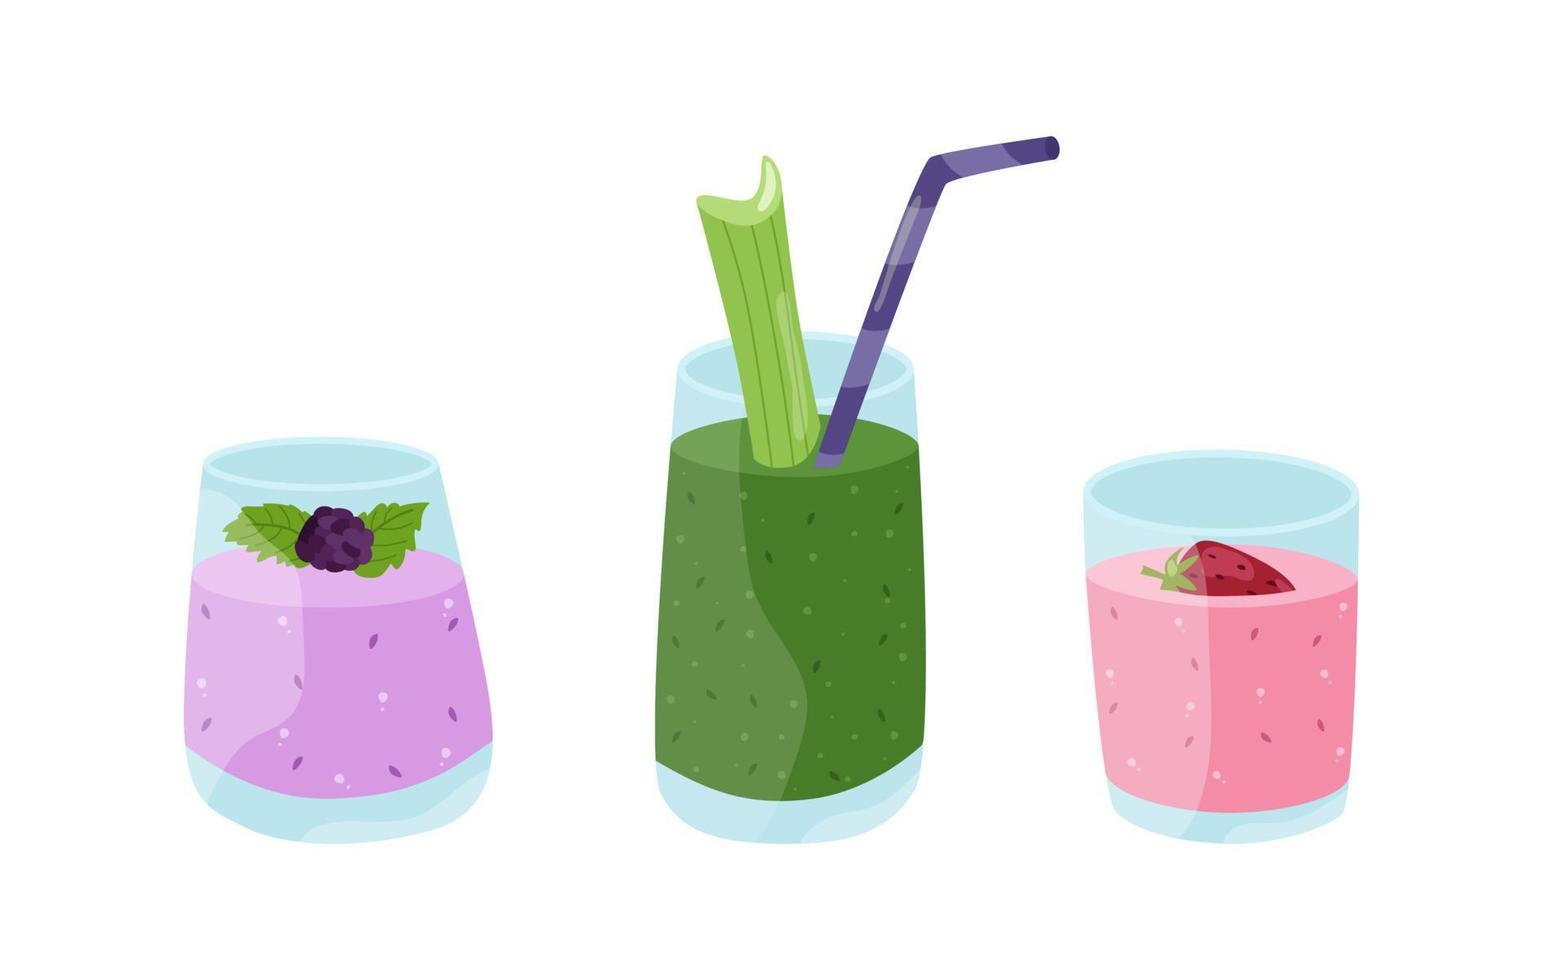 coquetéis de smoothies de praia de verão com gelo. lilás com amoras, verde com espinafre e aipo, rosa com morangos. ilustração em vetor de bebidas refrescantes em copos com tubos.